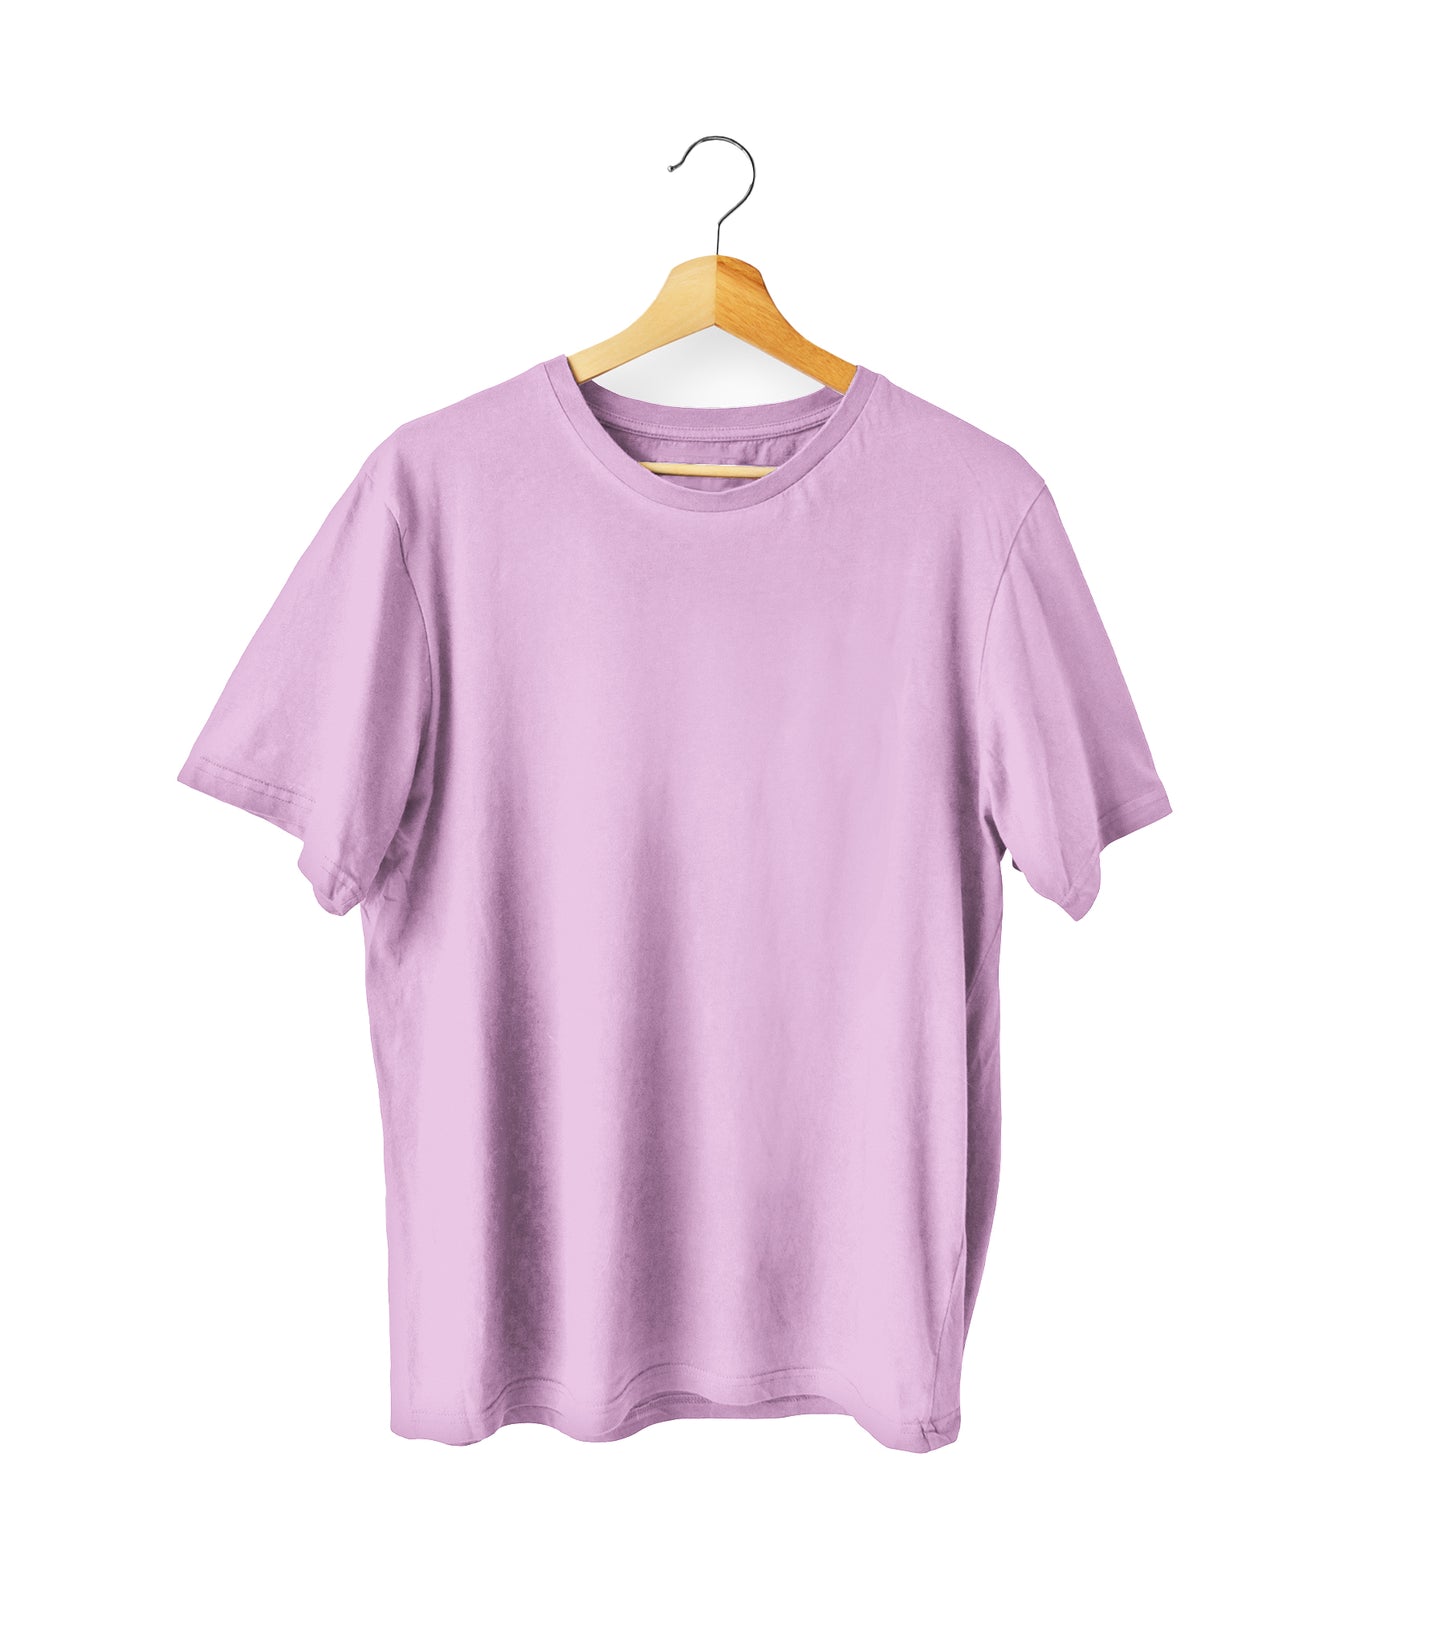 Lavender Oversized Cotton T-shirt.